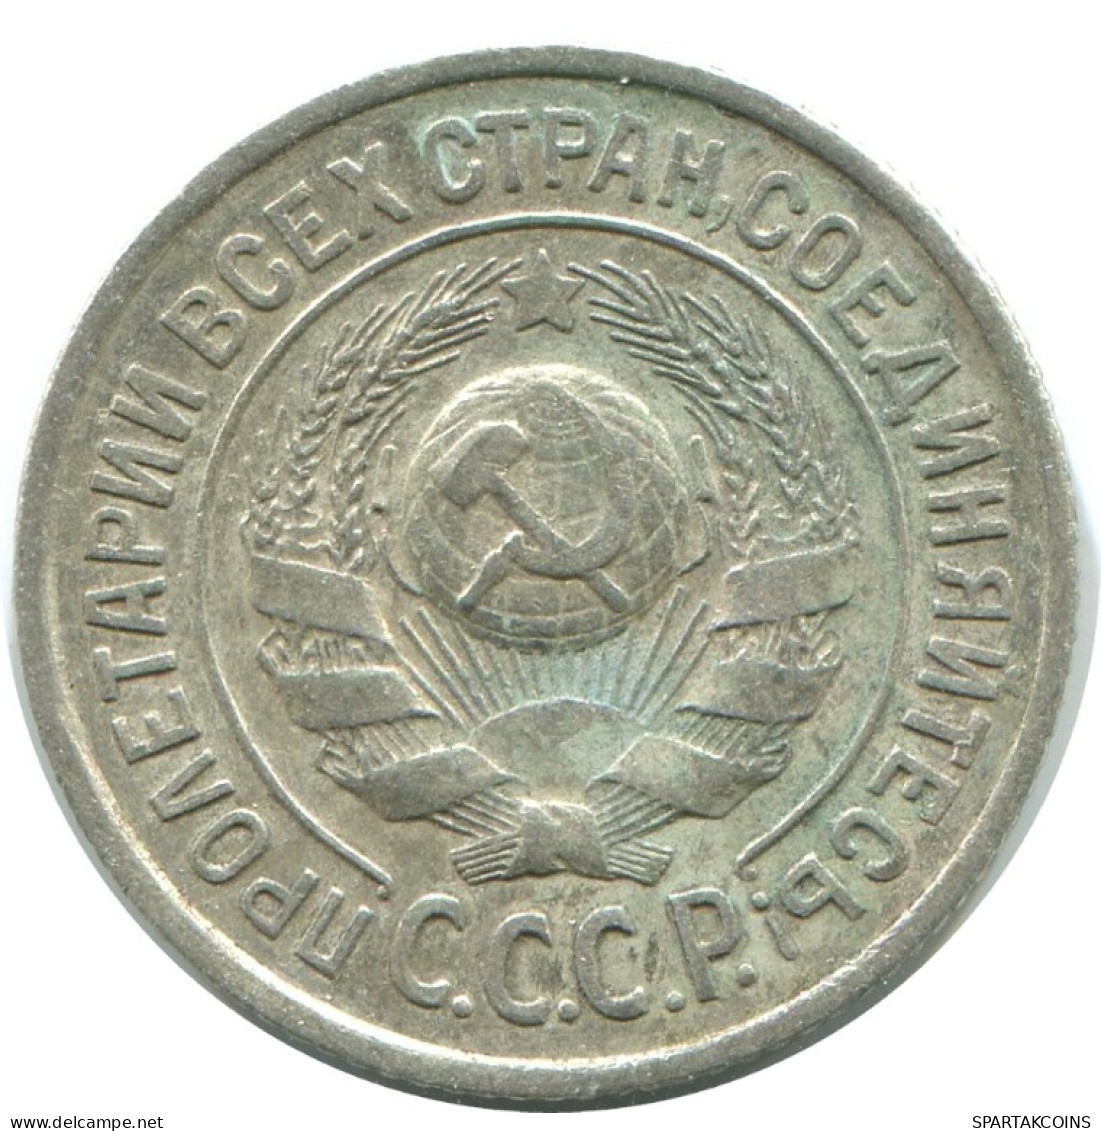 15 KOPEKS 1925 RUSSLAND RUSSIA USSR SILBER Münze HIGH GRADE #AF255.4.D.A - Russland